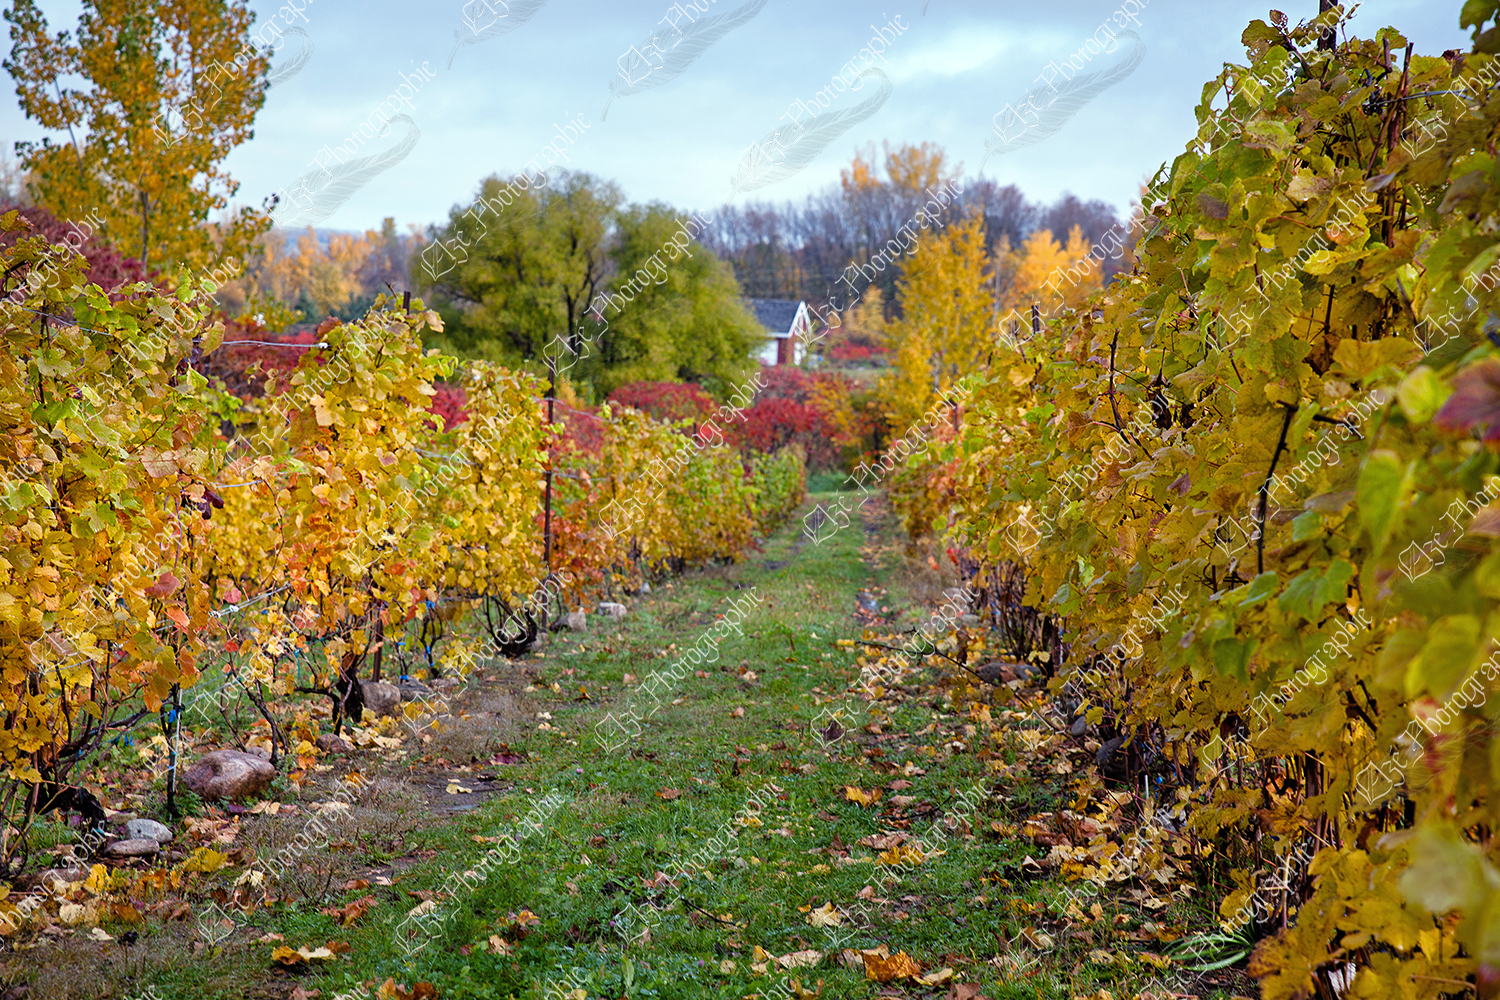 elze_photo_3301_rangee_vignoble_automne_wineyard_winery